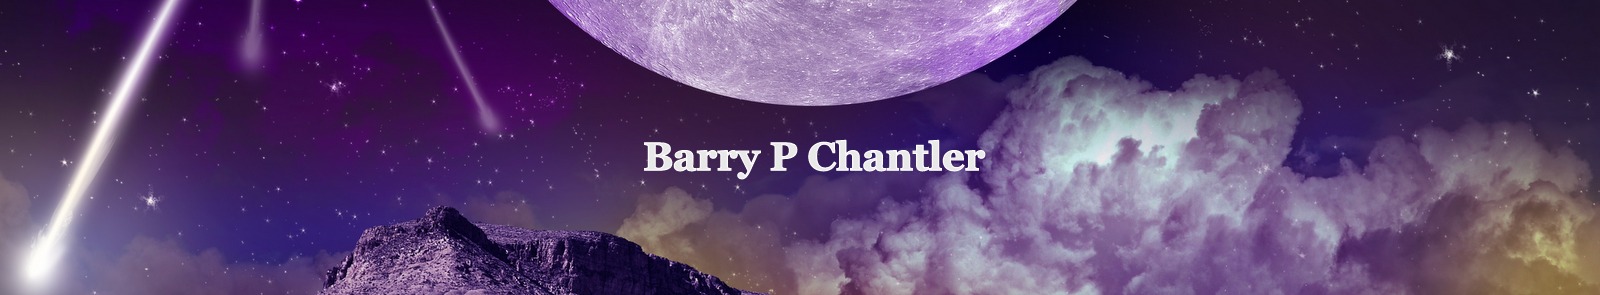 Barry Paul Chantler